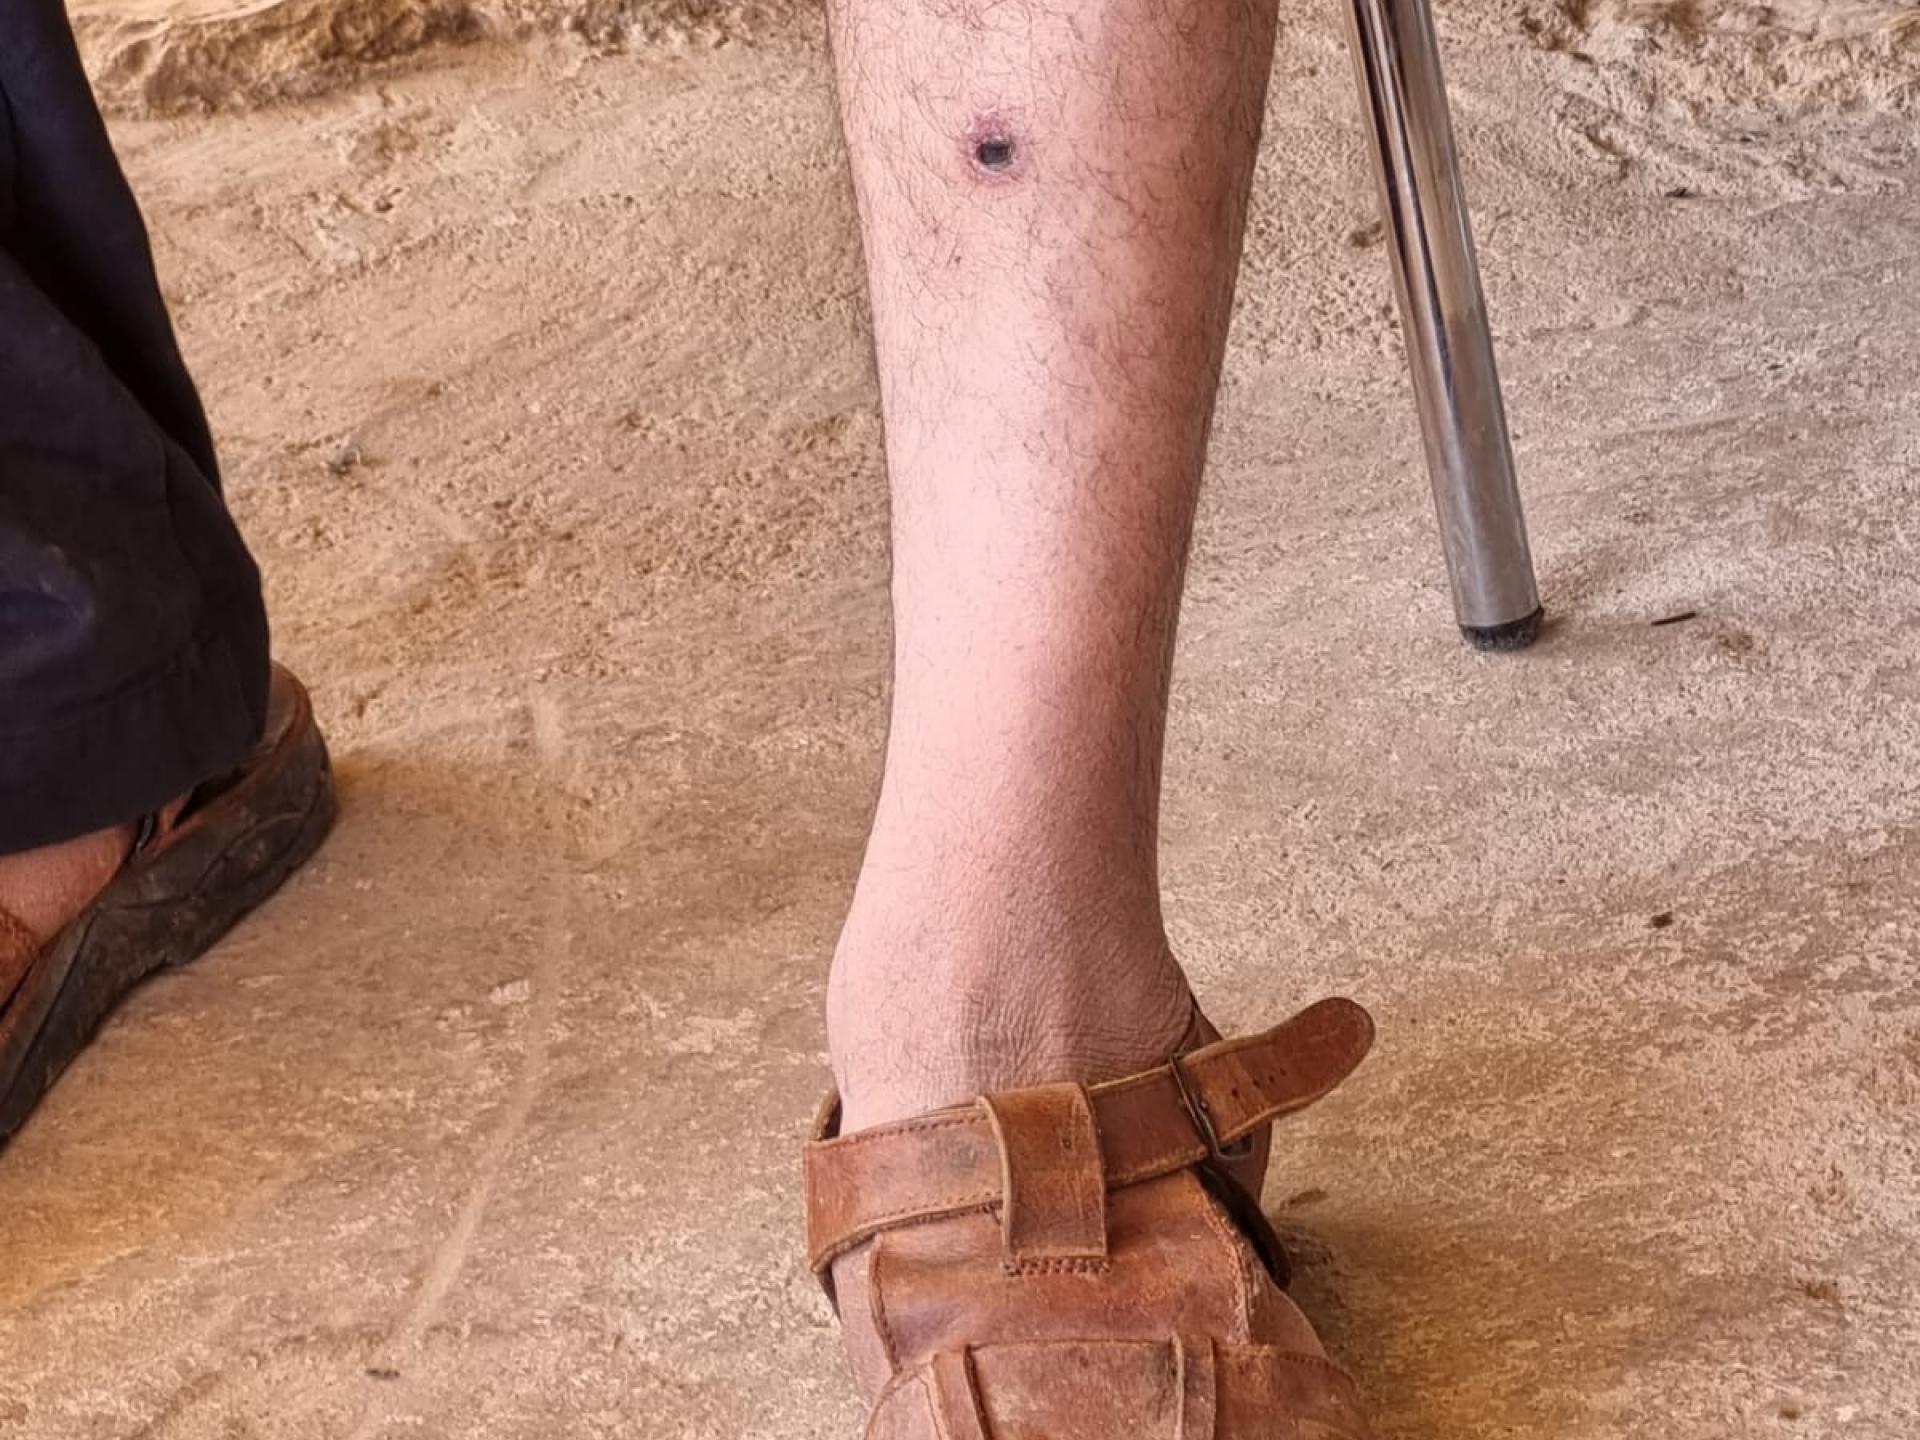 שעב אל בוטום - רגלו החבולה של מוחמד ג'בארין אחרי כ-20 יום ועדיין סובל מכאבים